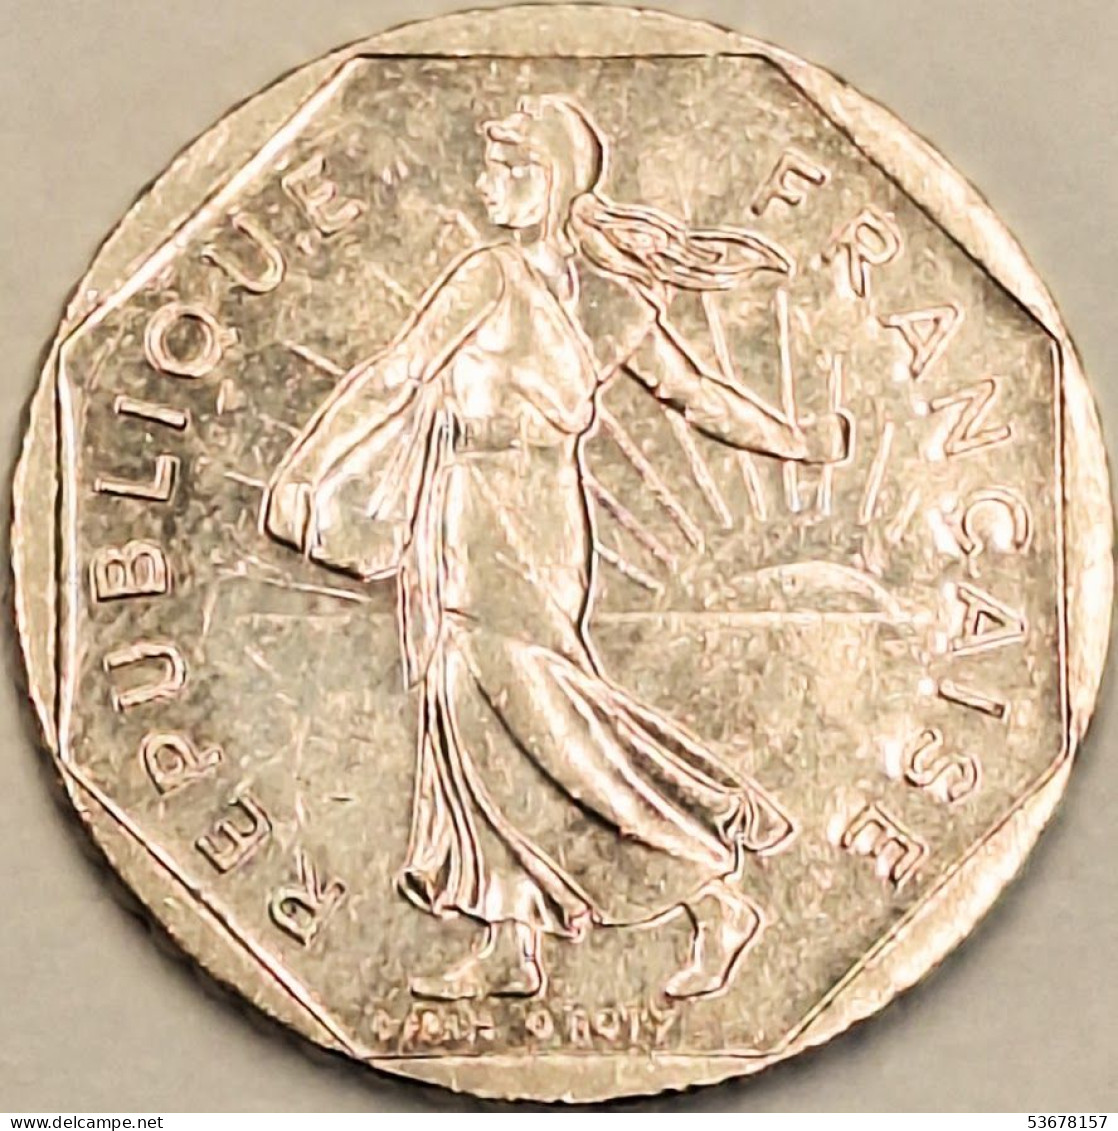 France - 2 Francs 1997, KM# 942.1 (#4328) - 2 Francs